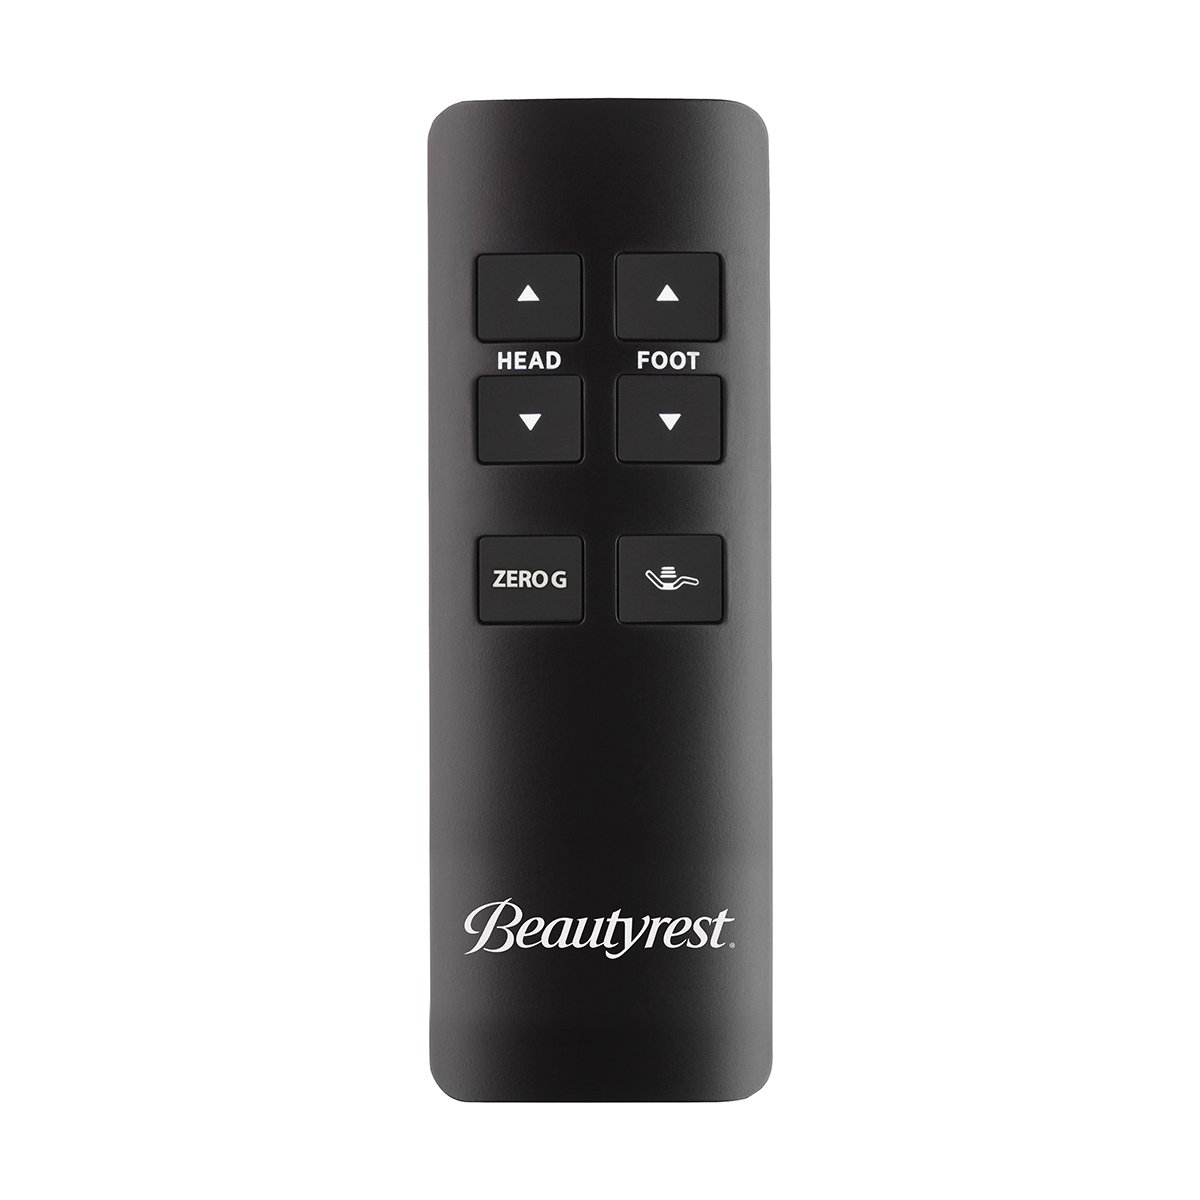 Beautyrest Advanced Motion Adjustable Base Remote